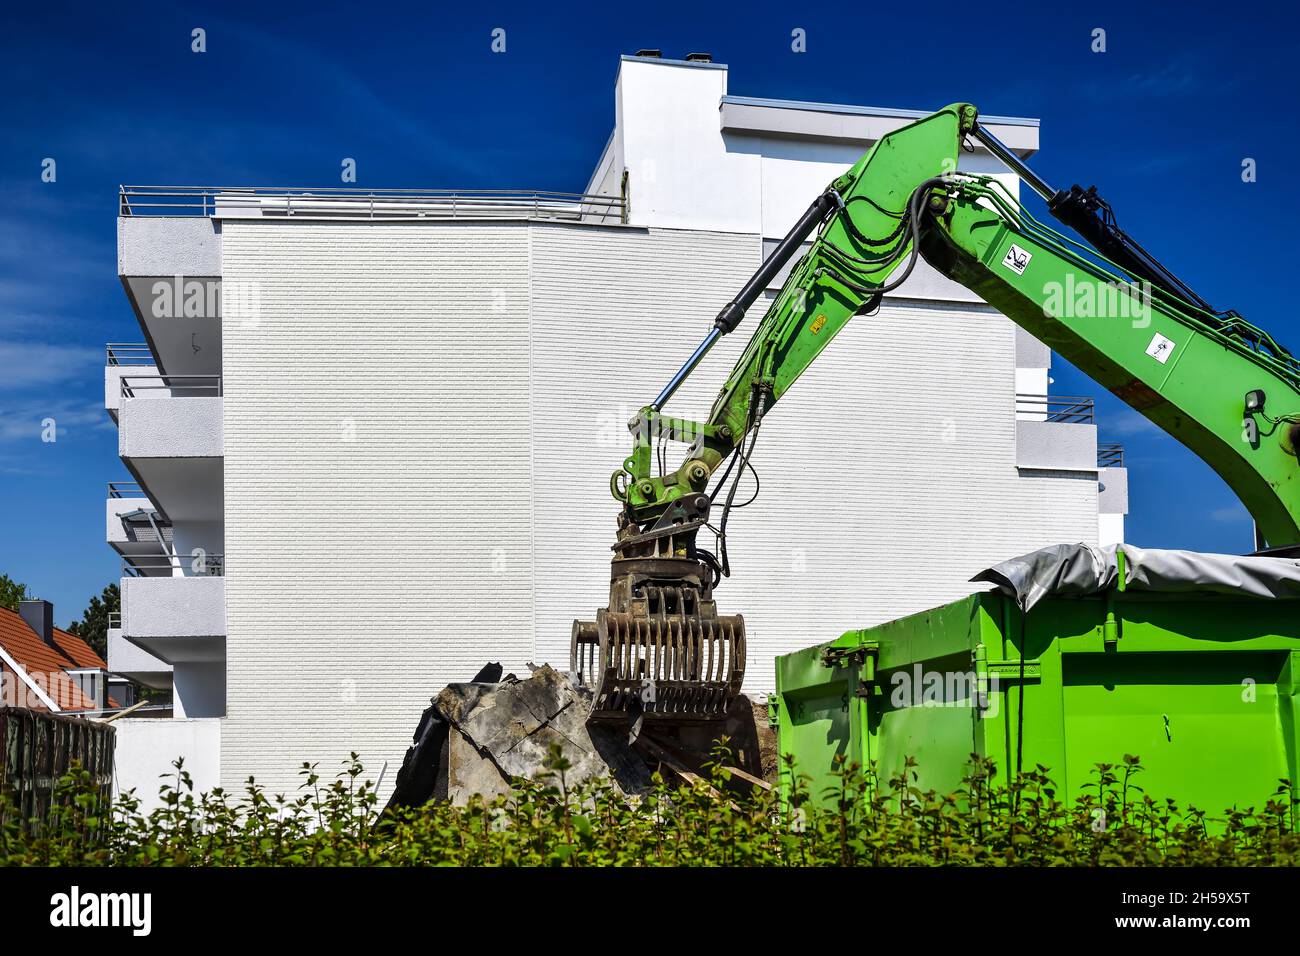 Abriss eines Altbaus an der Strandallee in Haffkrug, Scharbeutz, Schleswig-Holstein, Deutschland, Europa Stock Photo